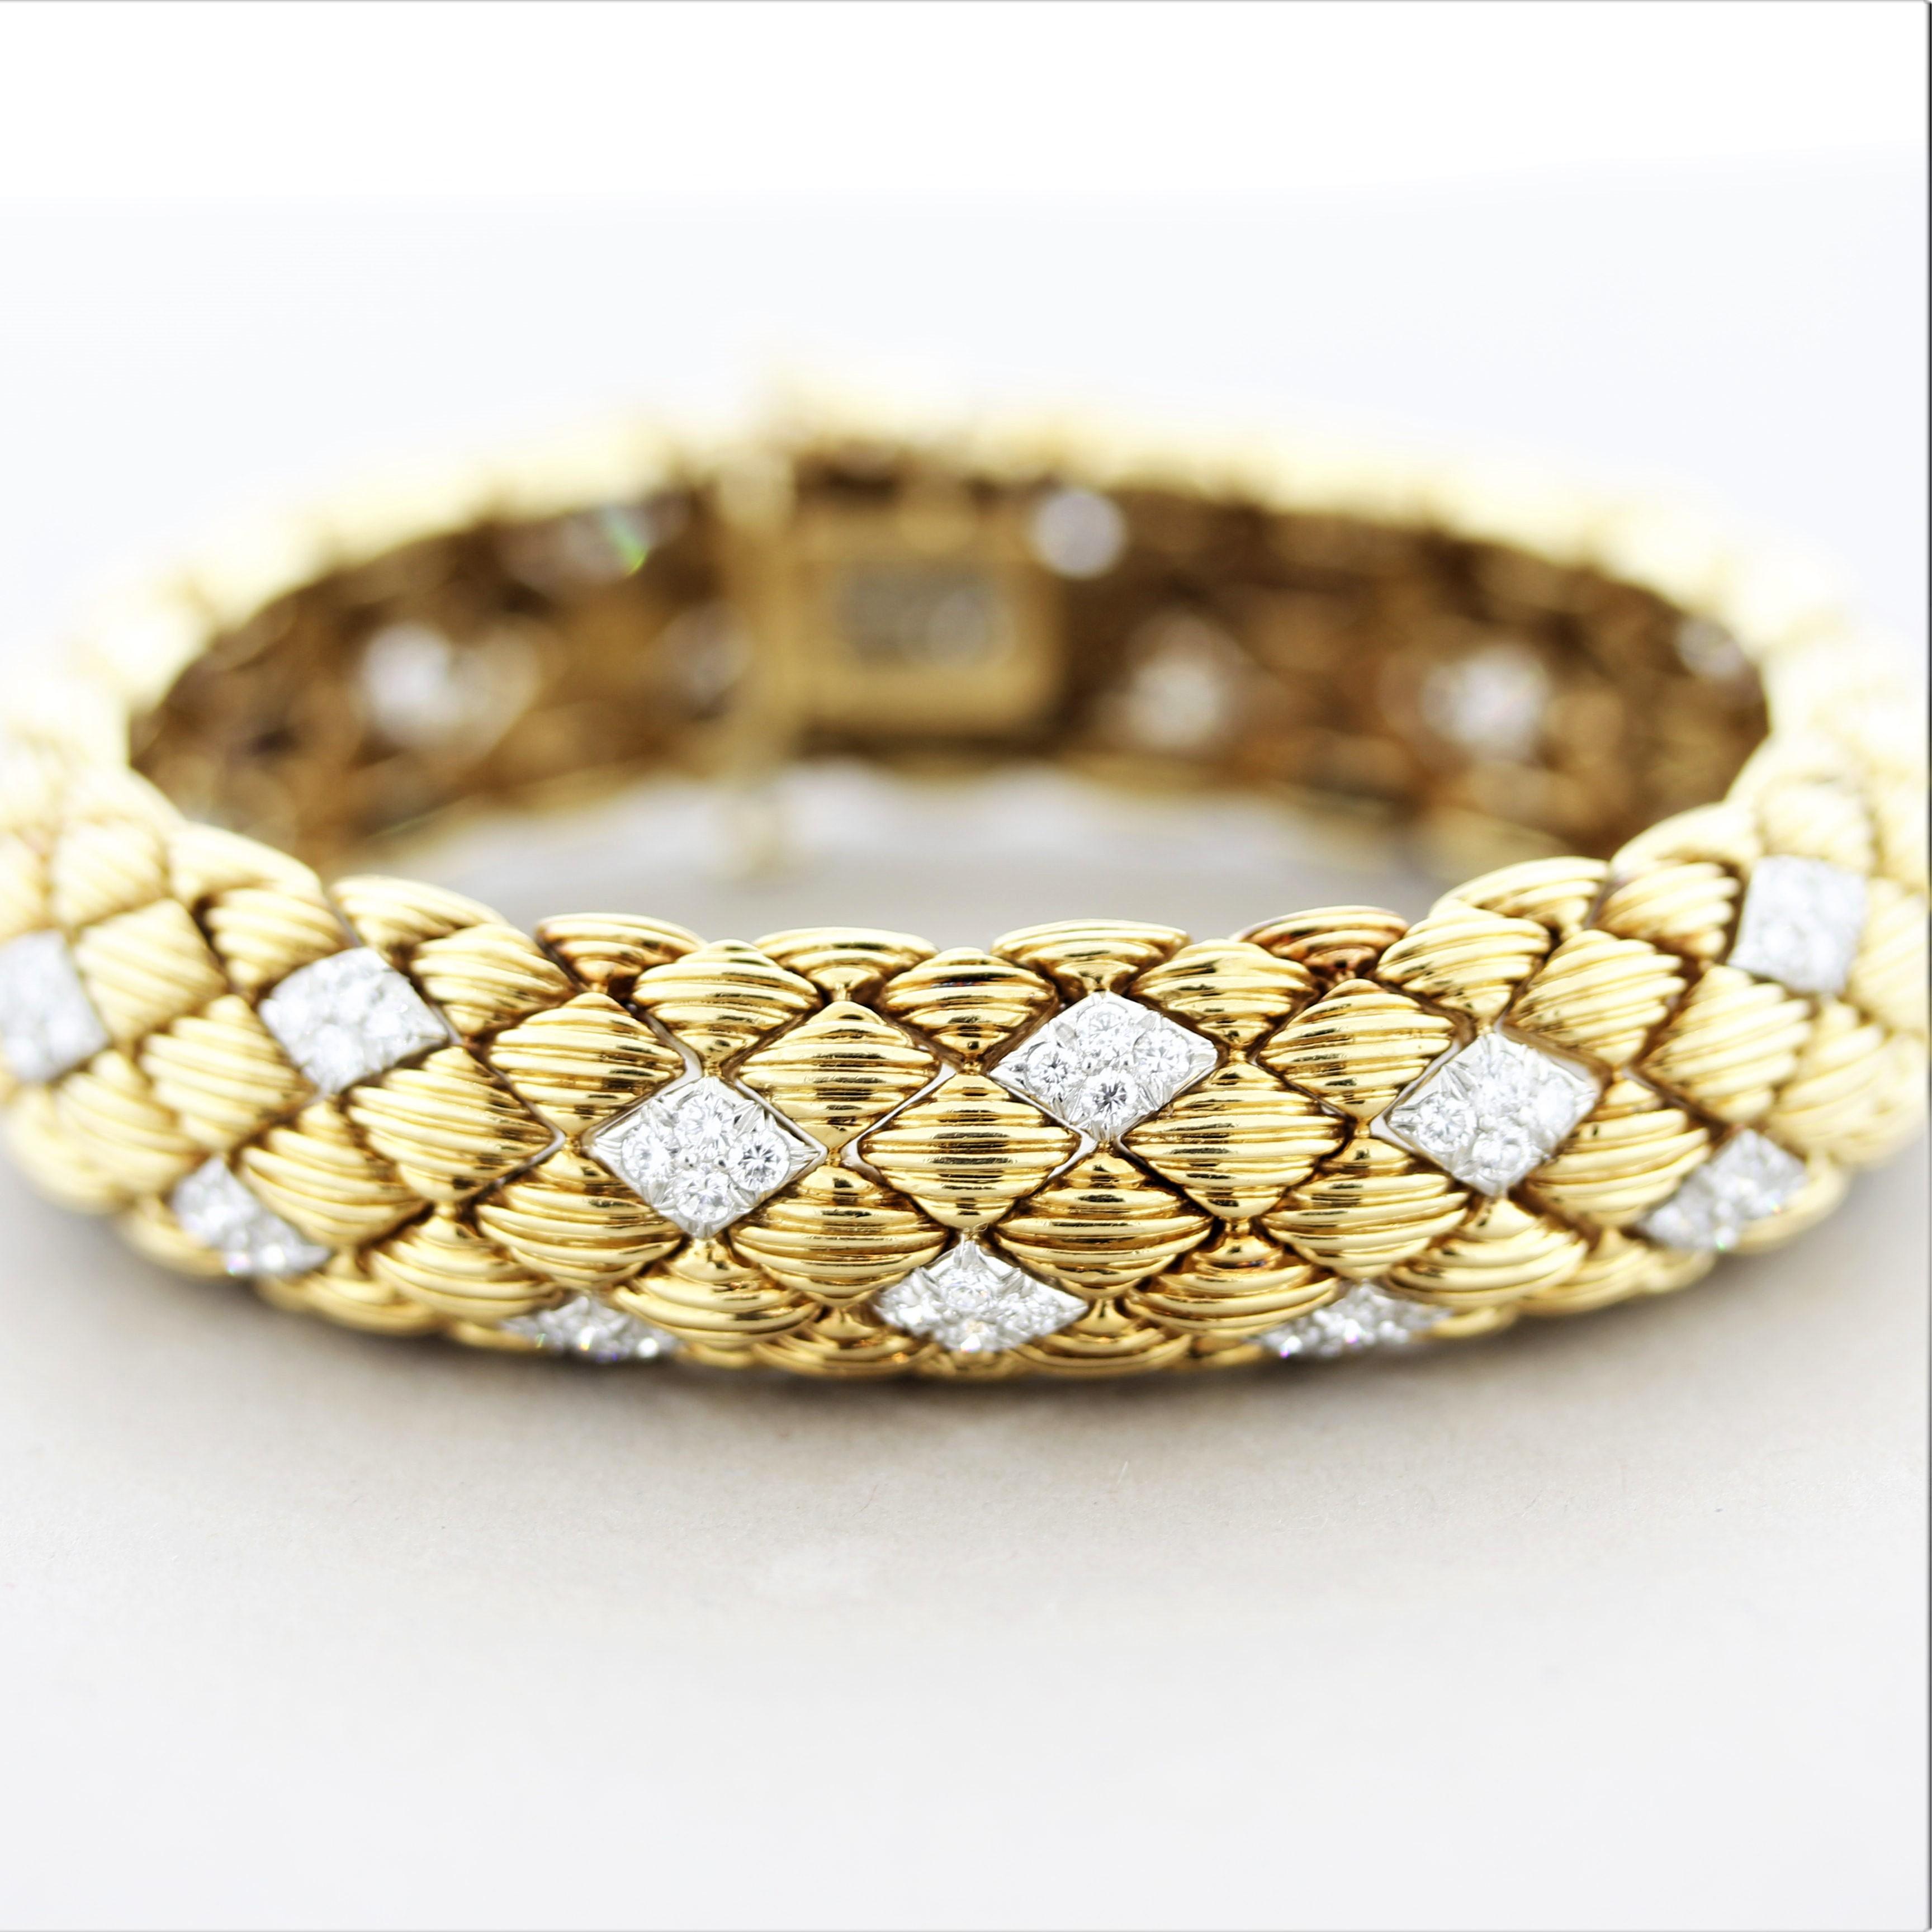 Ein elegantes und stilvolles Armband des berühmten amerikanischen Juweliers David Webb. Das Armband besteht aus 5 Karat runden Brillanten, die in diamantförmige Weißgoldschalen gefasst sind. Der Rest des Armbands besteht aus 18 Karat Gelbgold mit